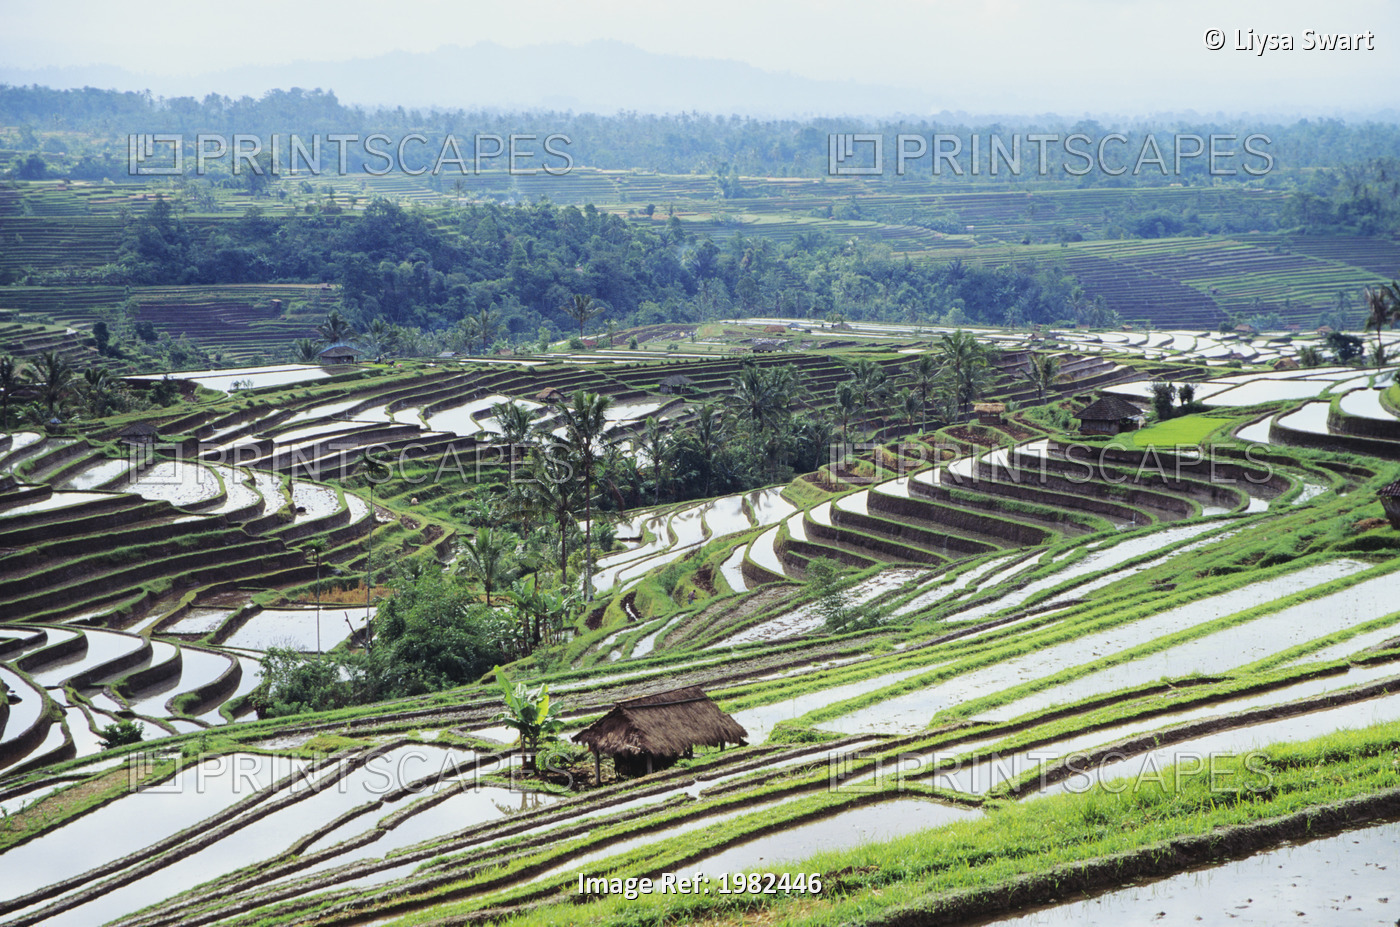 A landscape of terraced rice paddy fields; Bali